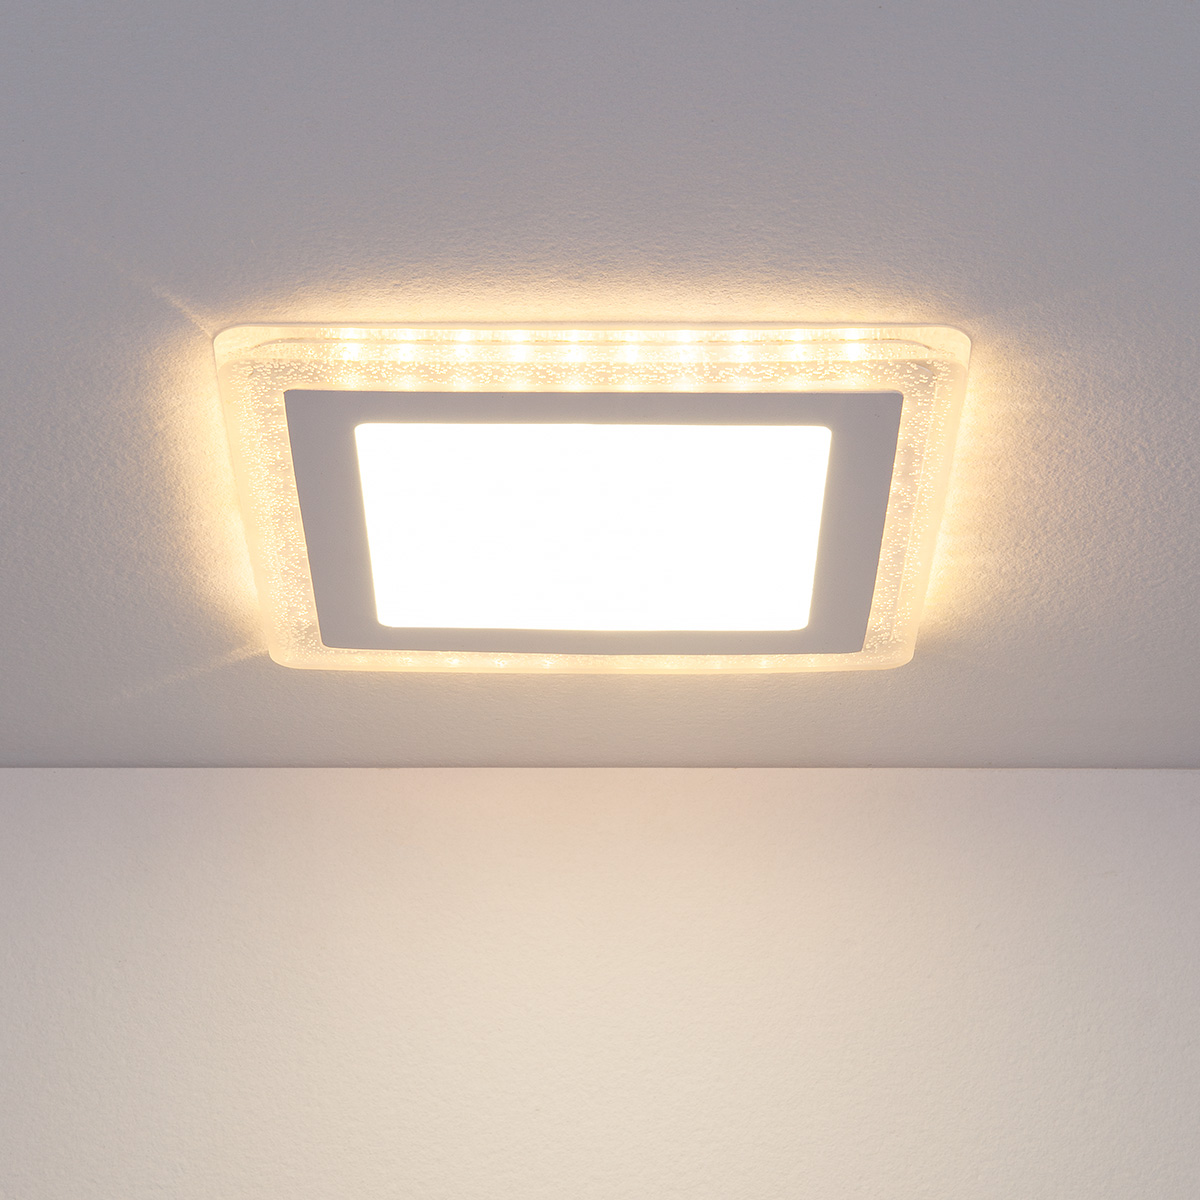 Встраиваемый потолочный светодиодный светильник DLS024 18W 4200K